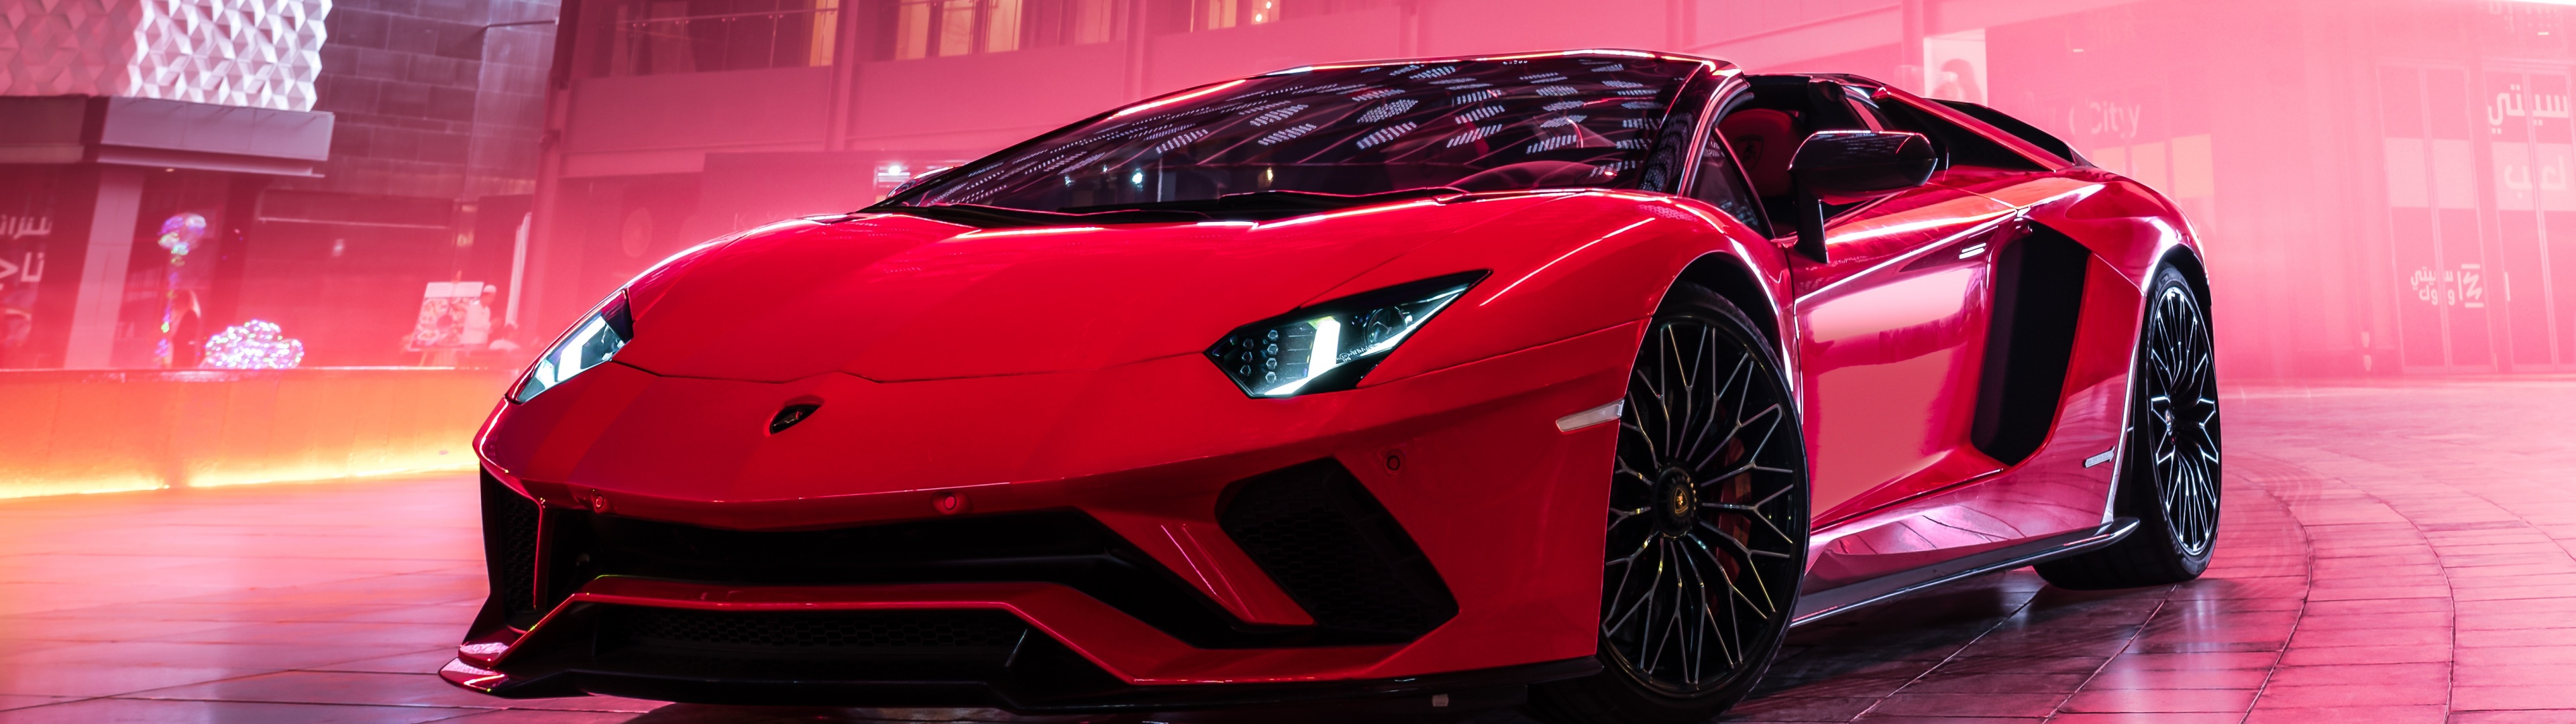 Lamborghini luôn là biểu tượng của sự sang trọng và quyền lực. Hình nền Lamborghini 4k giúp ta thỏa mãn niềm đam mê với siêu xe và tạo nên không gian làm việc hoàn hảo.